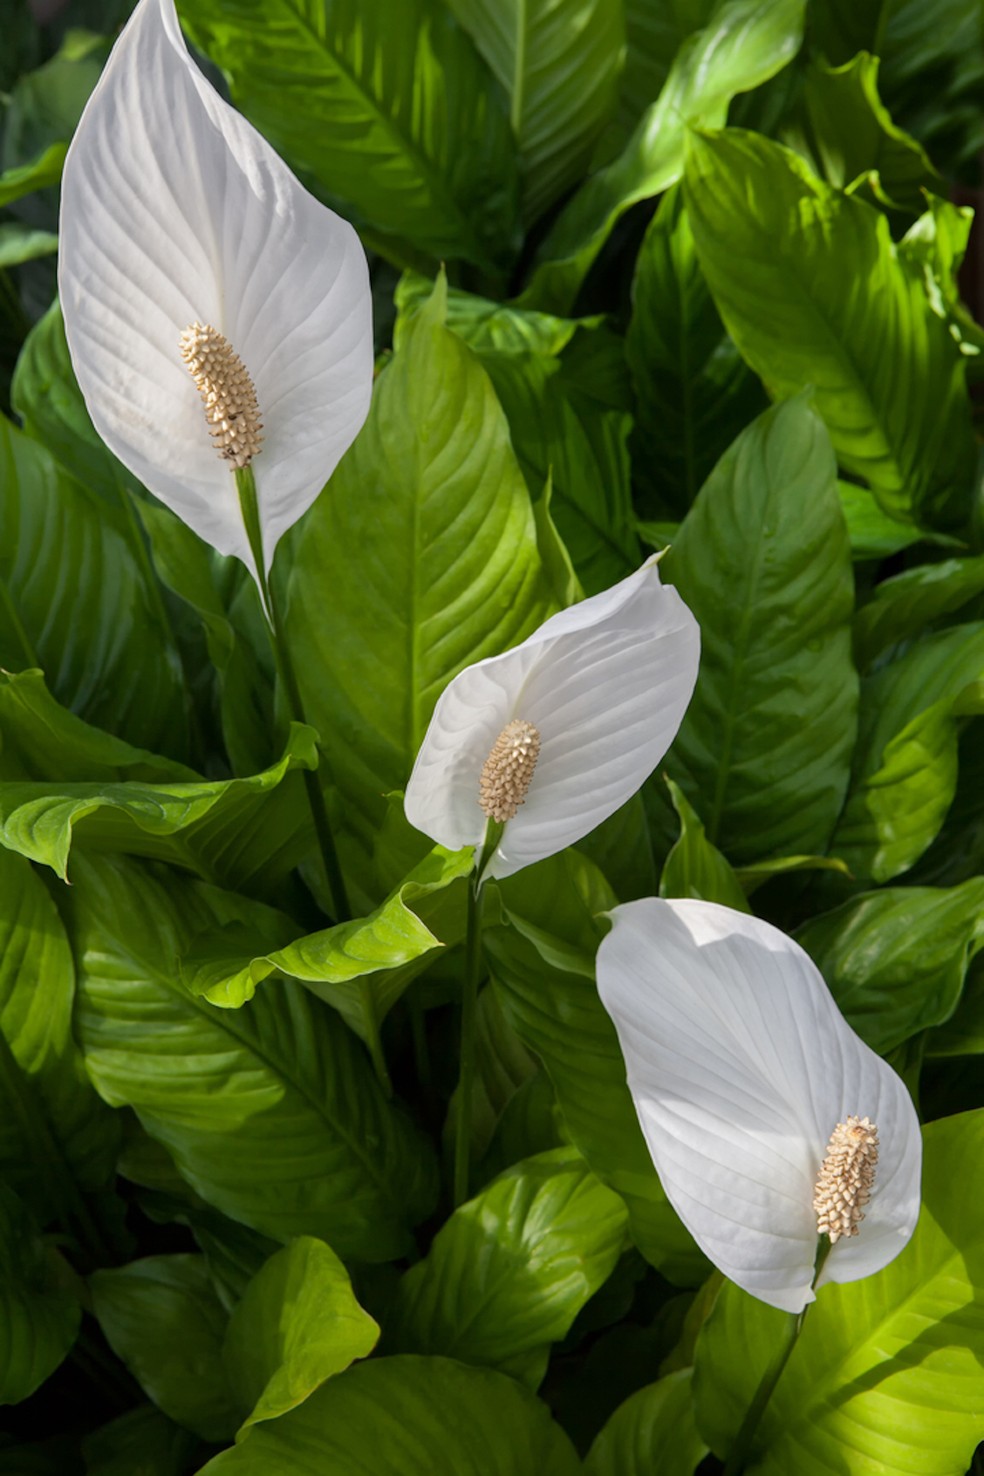 O lírio-da-paz tem folhas verdes e alongadas com inflorescências brancas — Foto: PxHere / frankorchid / Creative Commons